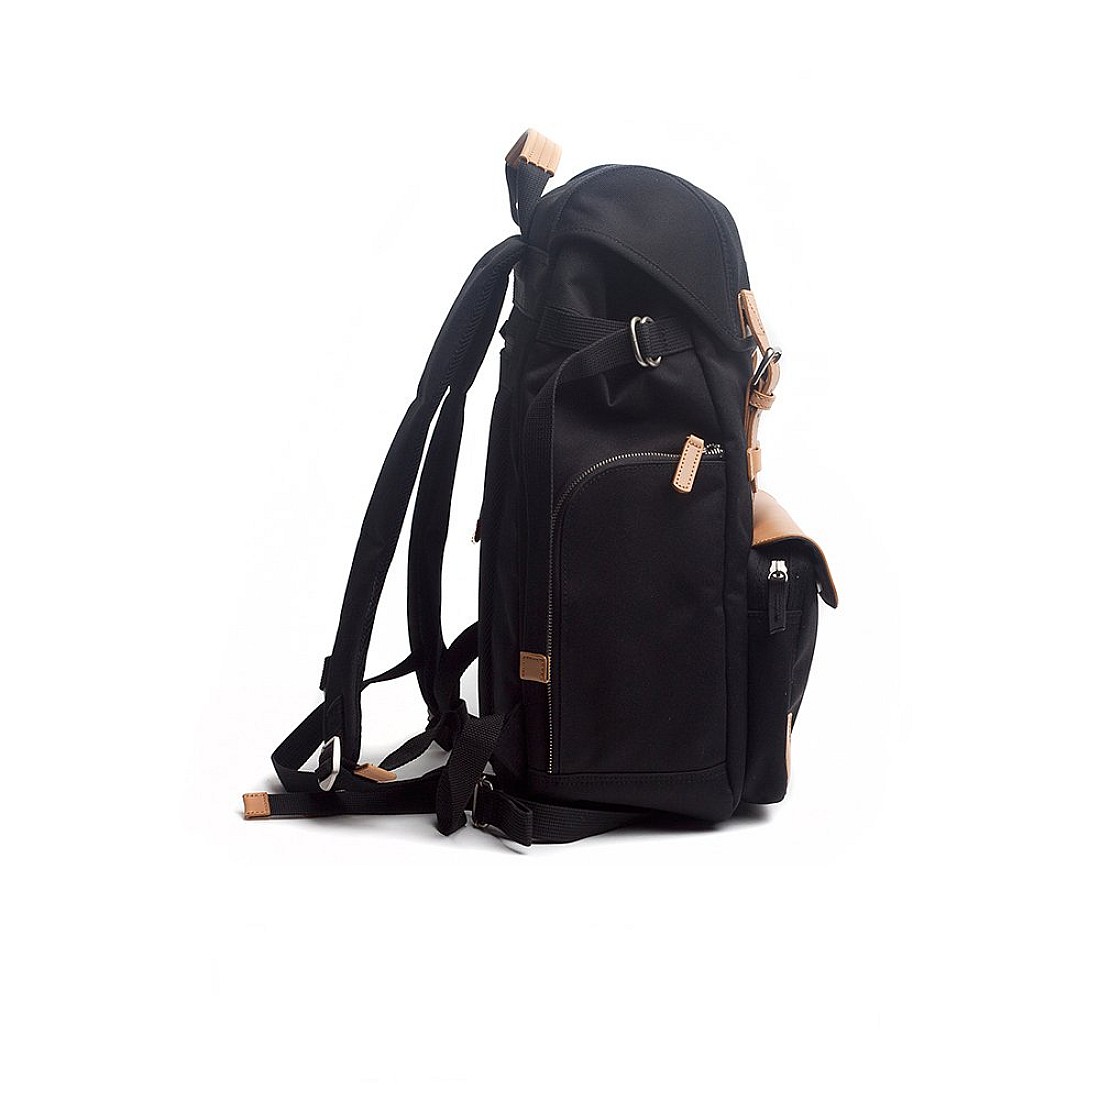 Venque Alpine Black Backpack